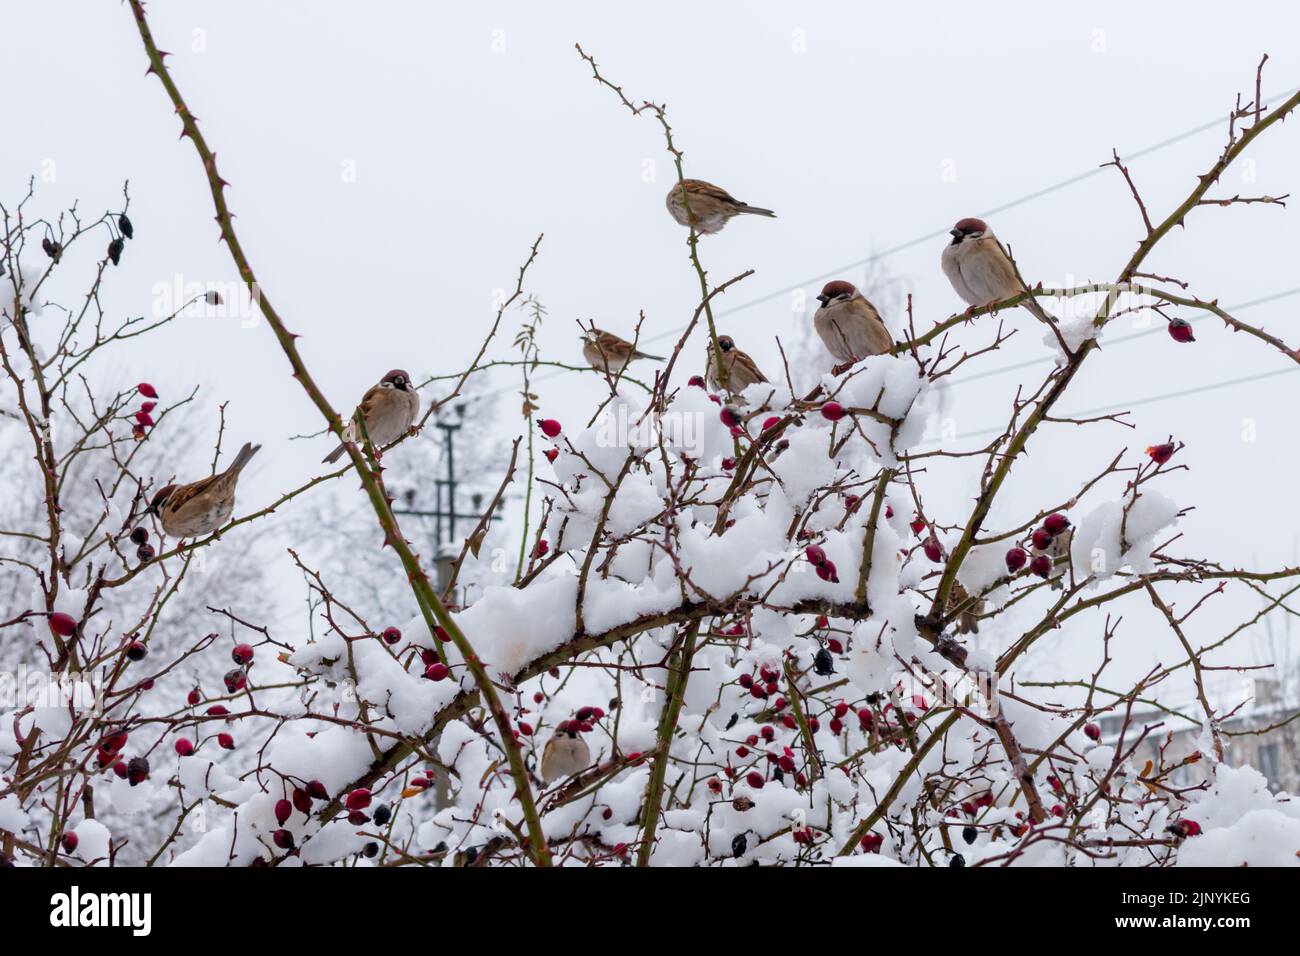 Viele Sperlinge sitzen auf den Zweigen der Wildrose mit roten Beeren, die mit Schnee bedeckt sind. Stockfoto